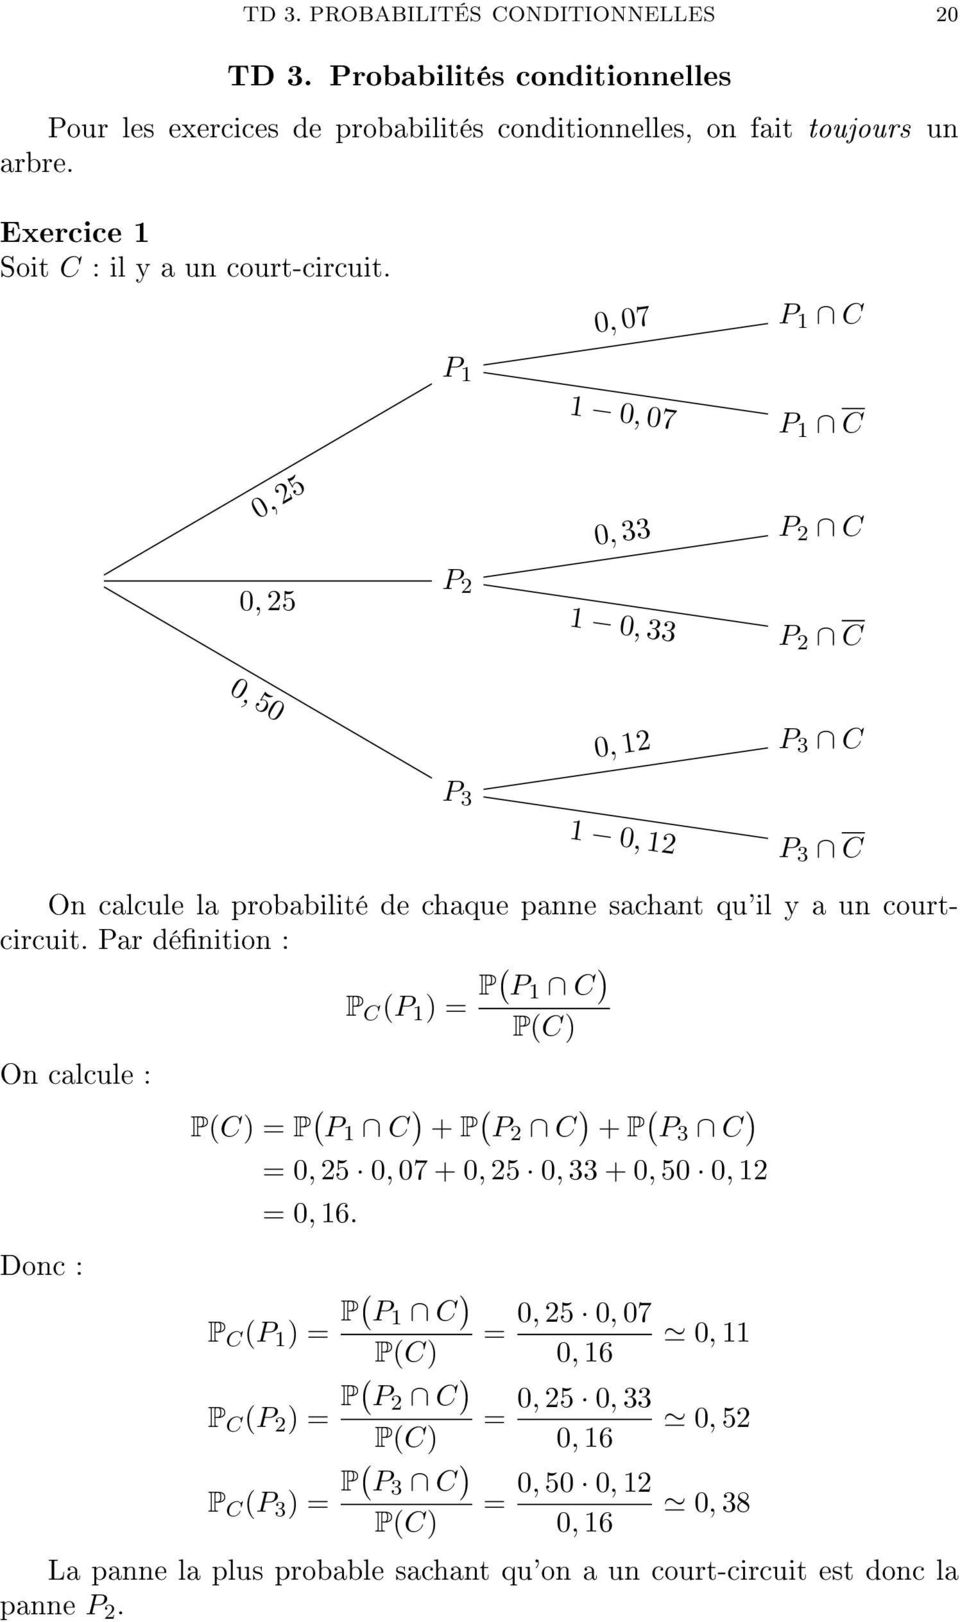 Par dénition : P C (P 1 ) = P( P 1 C ) On calcule : Donc : P(C) P(C) = P ( P 1 C ) + P ( P 2 C ) + P ( P 3 C ) = 0, 25 0, 07 + 0, 25 0, 33 + 0, 50 0, 12 = 0, 16.